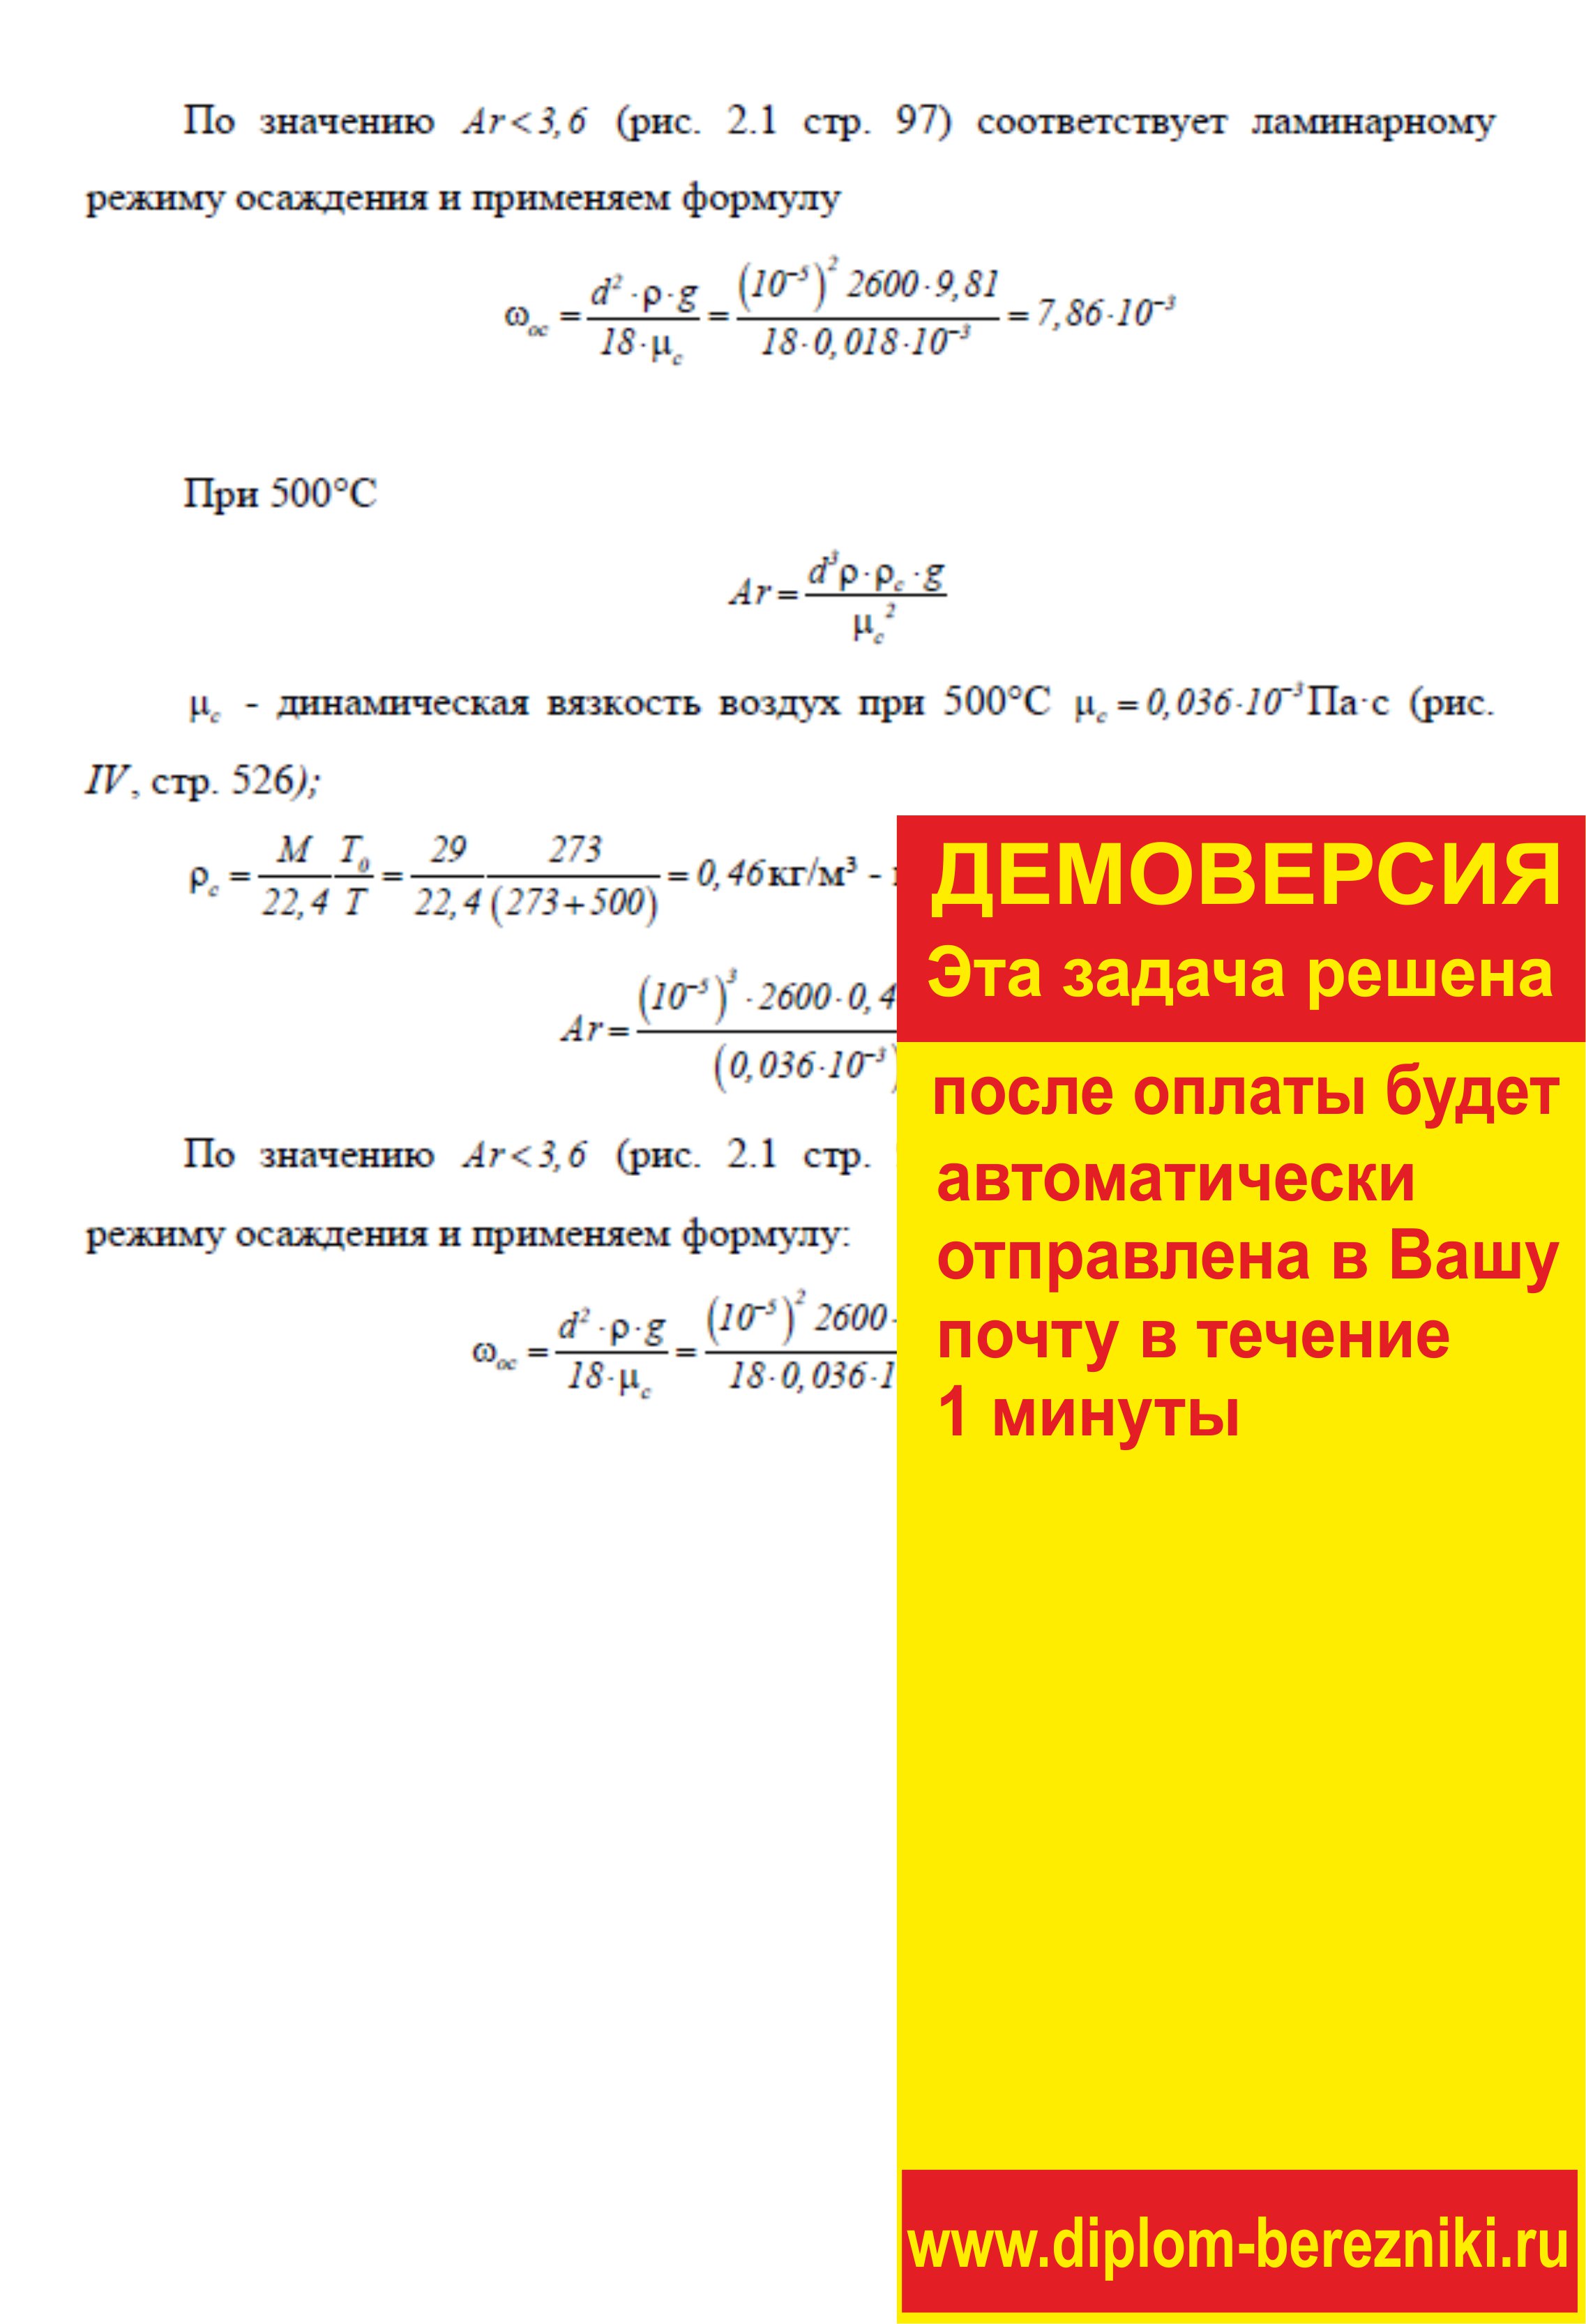 Решение задачи 3.2 по ПАХТ из задачника Павлова Романкова Носкова